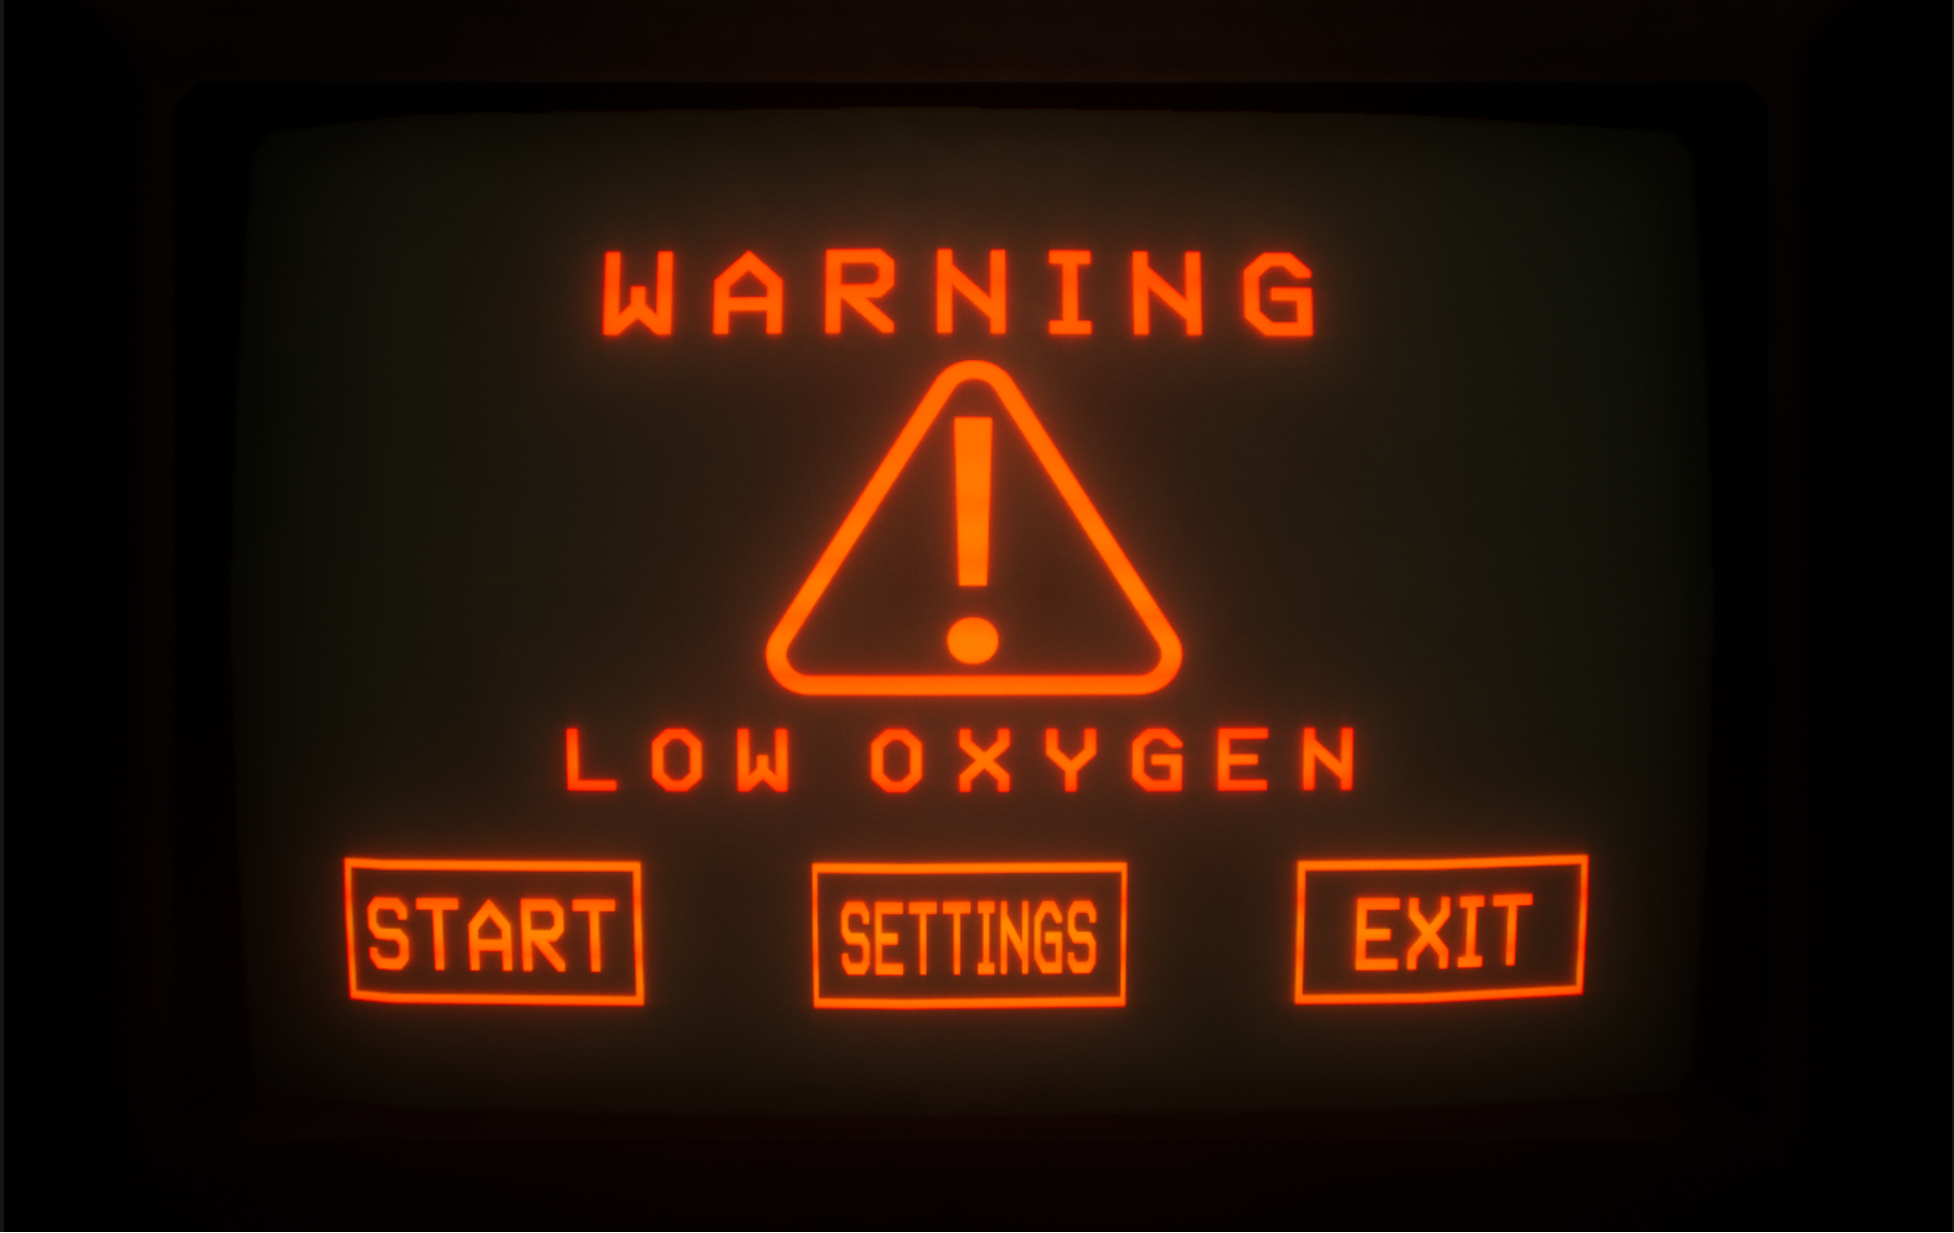 WARNING: LOW OXYGEN